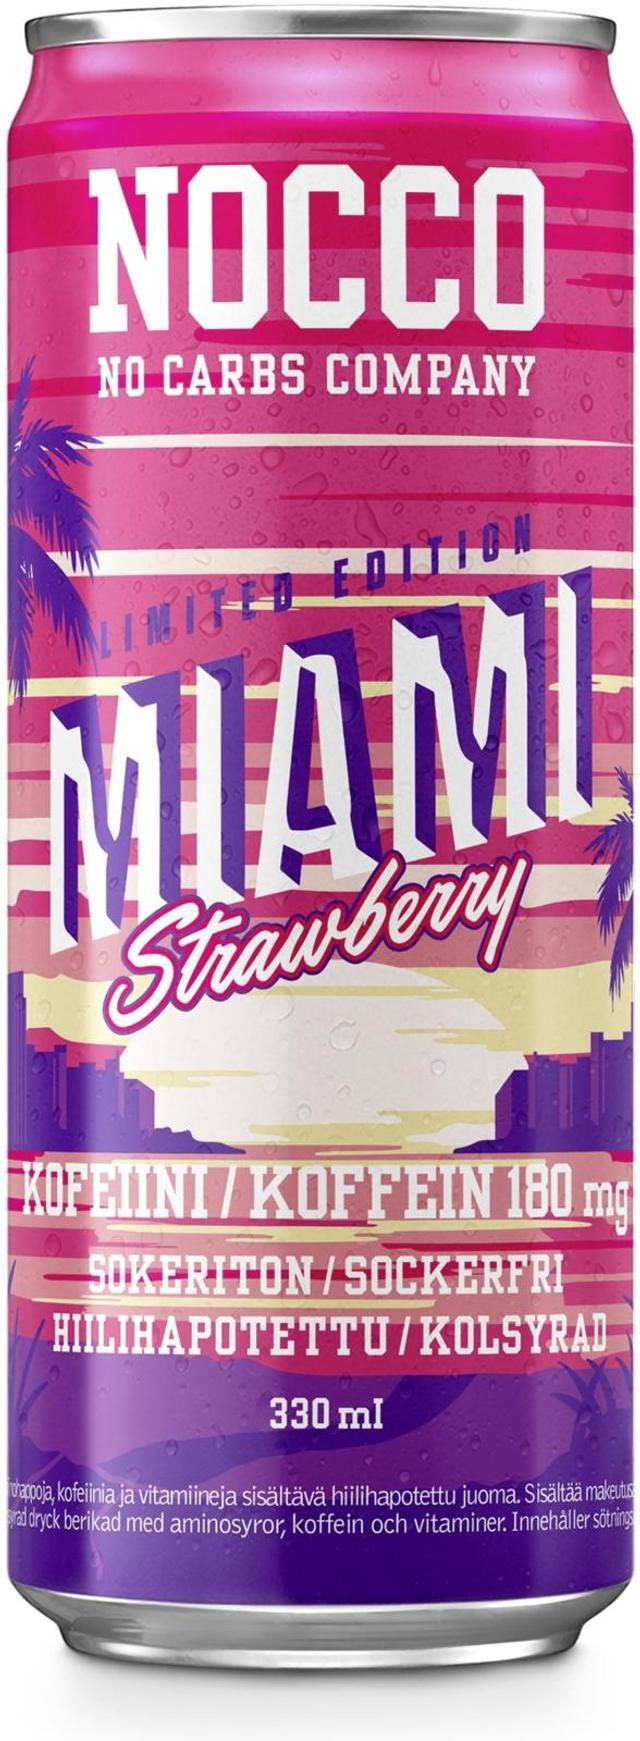 330ml NOCCO BCAA Miami Strawberry, Aminohappoja, kofeiinia ja vitamiineja sisältävä mansikanmakuinen hiilihapotettu energiajuoma